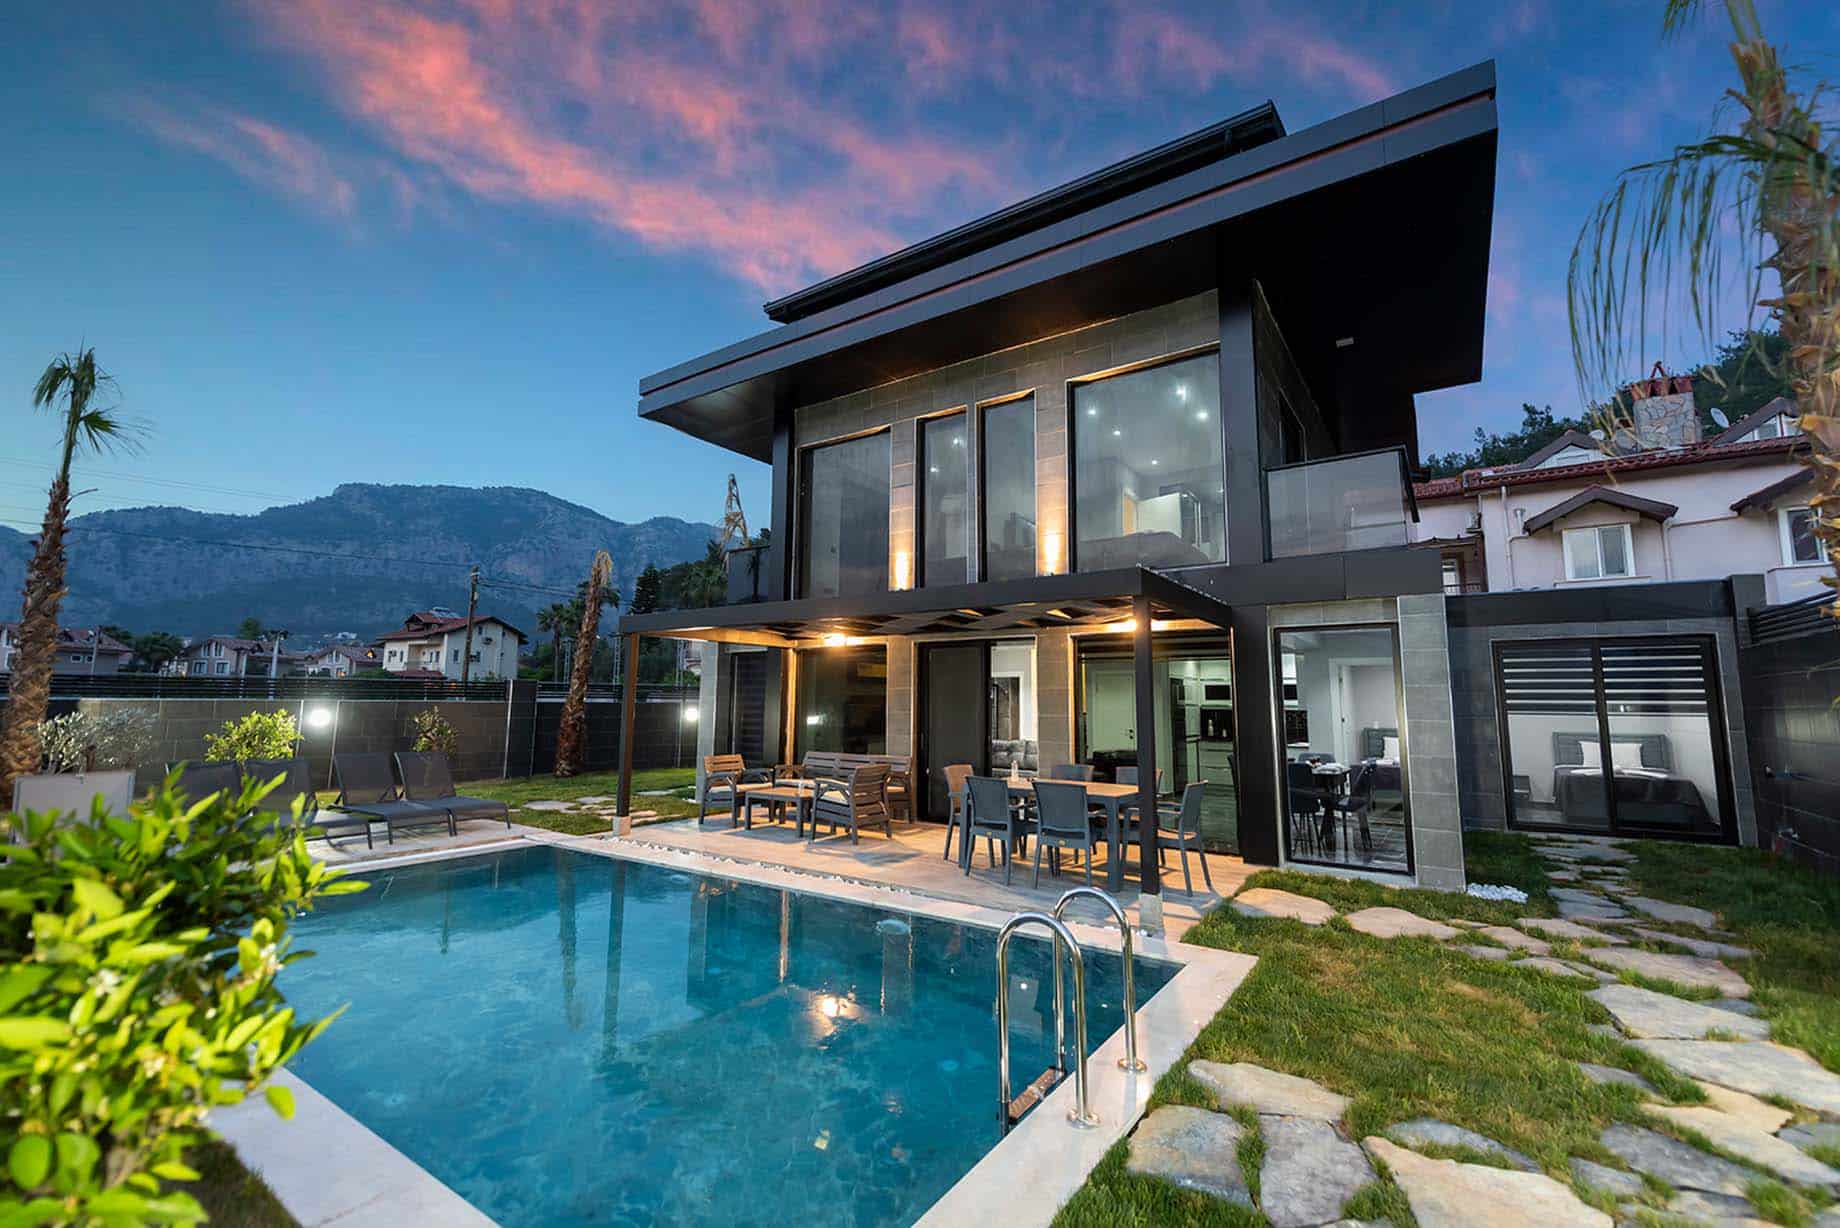 4 Bedroom Luxury Villa for Rent in Gocek